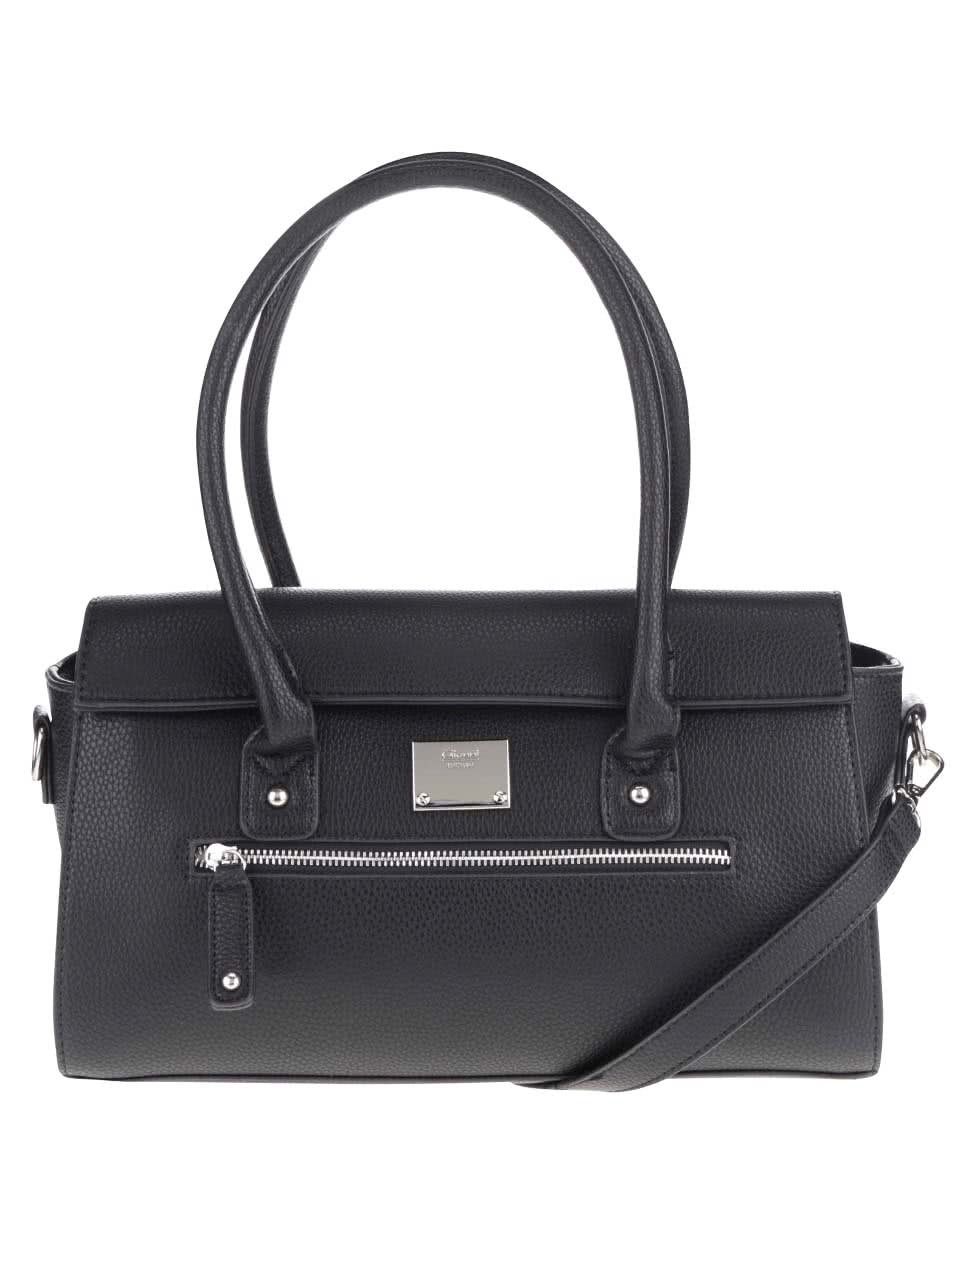 Černá kabelka s detaily ve stříbrné barvě Gionni Lia